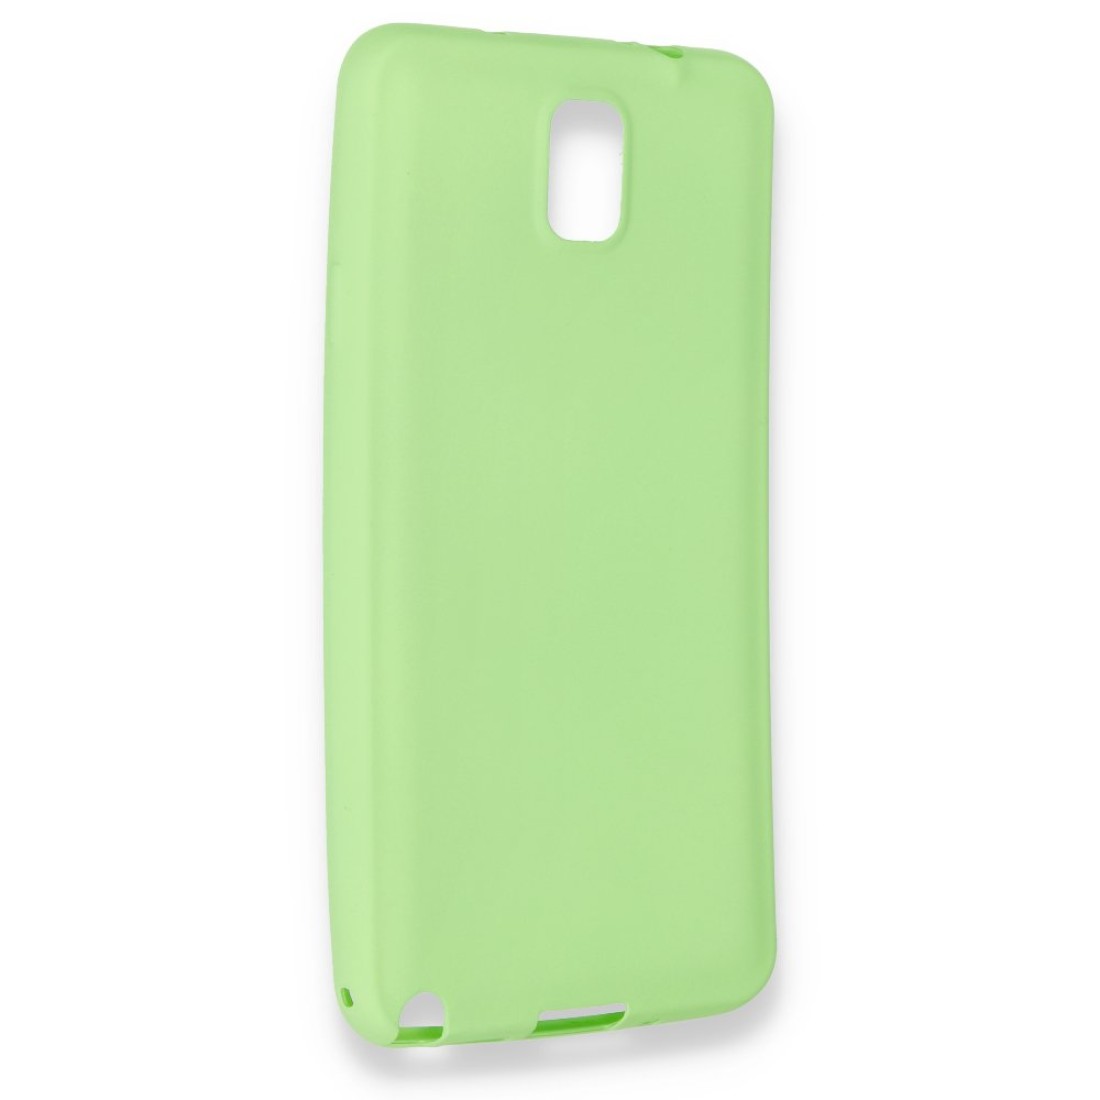 Samsung Galaxy Note 3 / N9000 Kılıf Premium Rubber Silikon - Yeşil